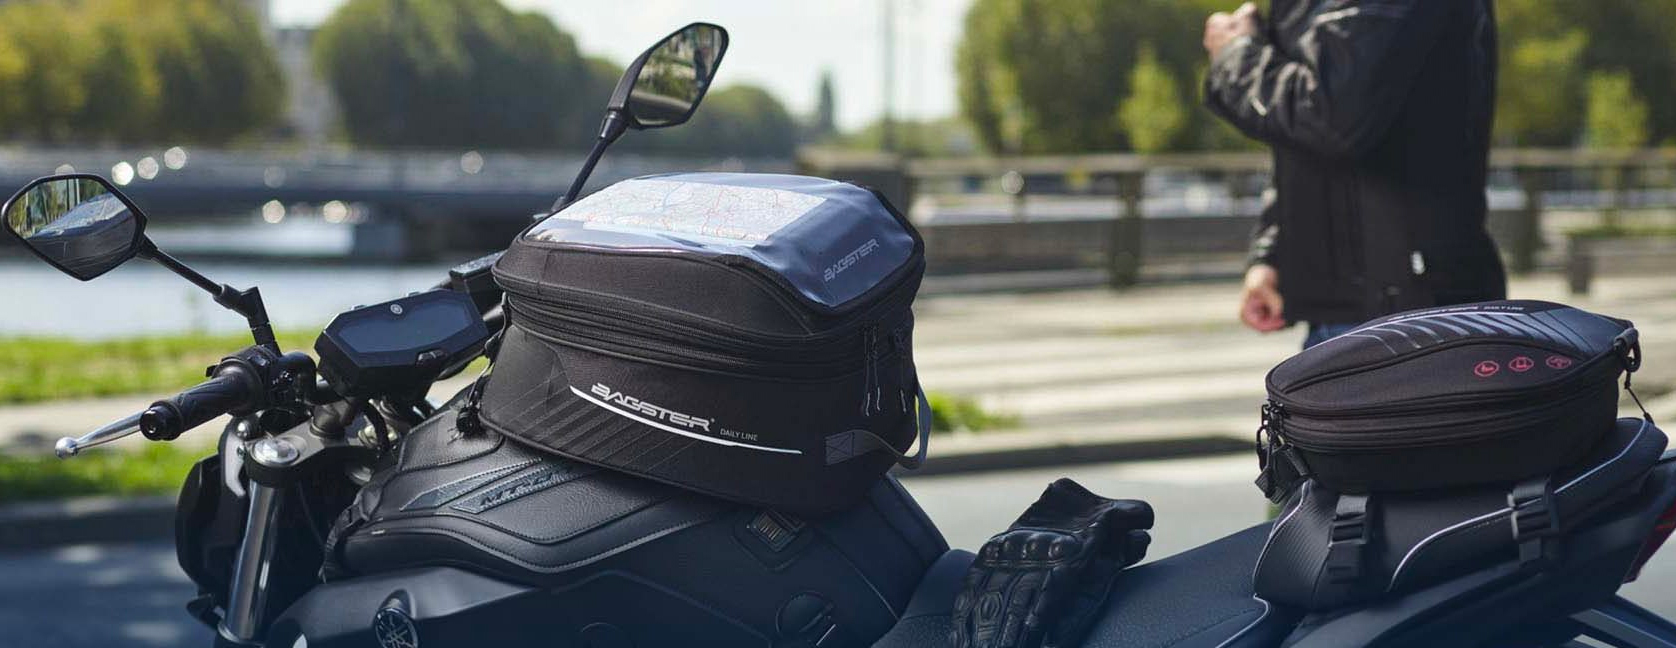 Porte-bagages Moto, Porte-bagages Arrière Complet Pour Moto 